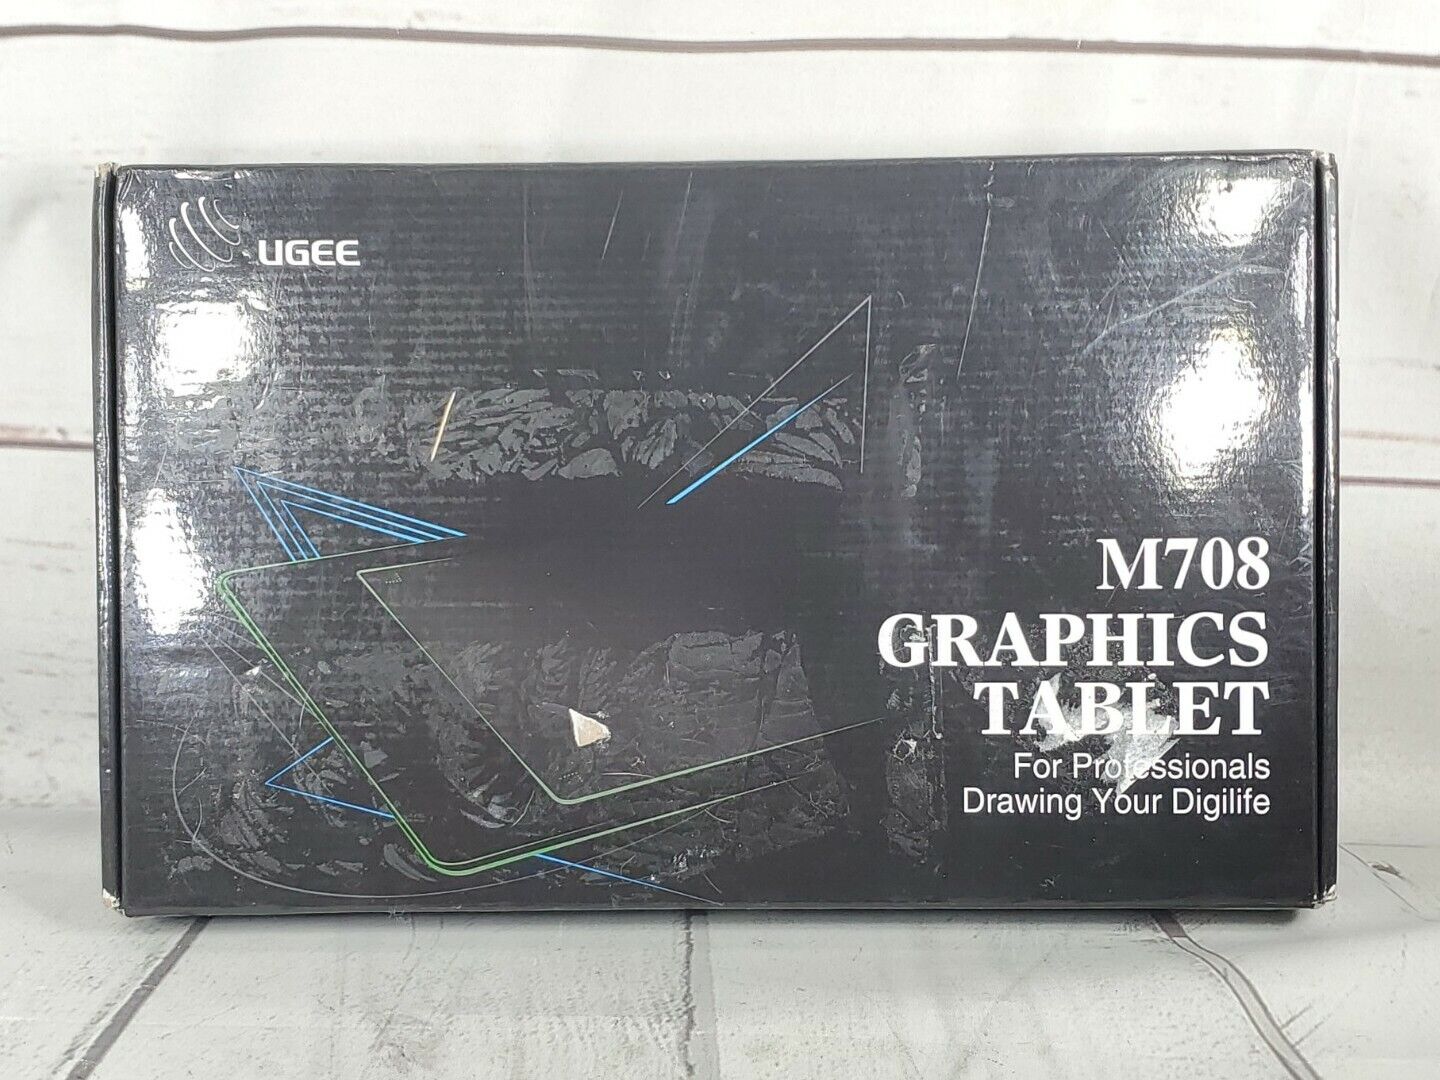 UGEE M708 Graphics Tablet 8192 Levels Digital Drawing Digital Tablet Board